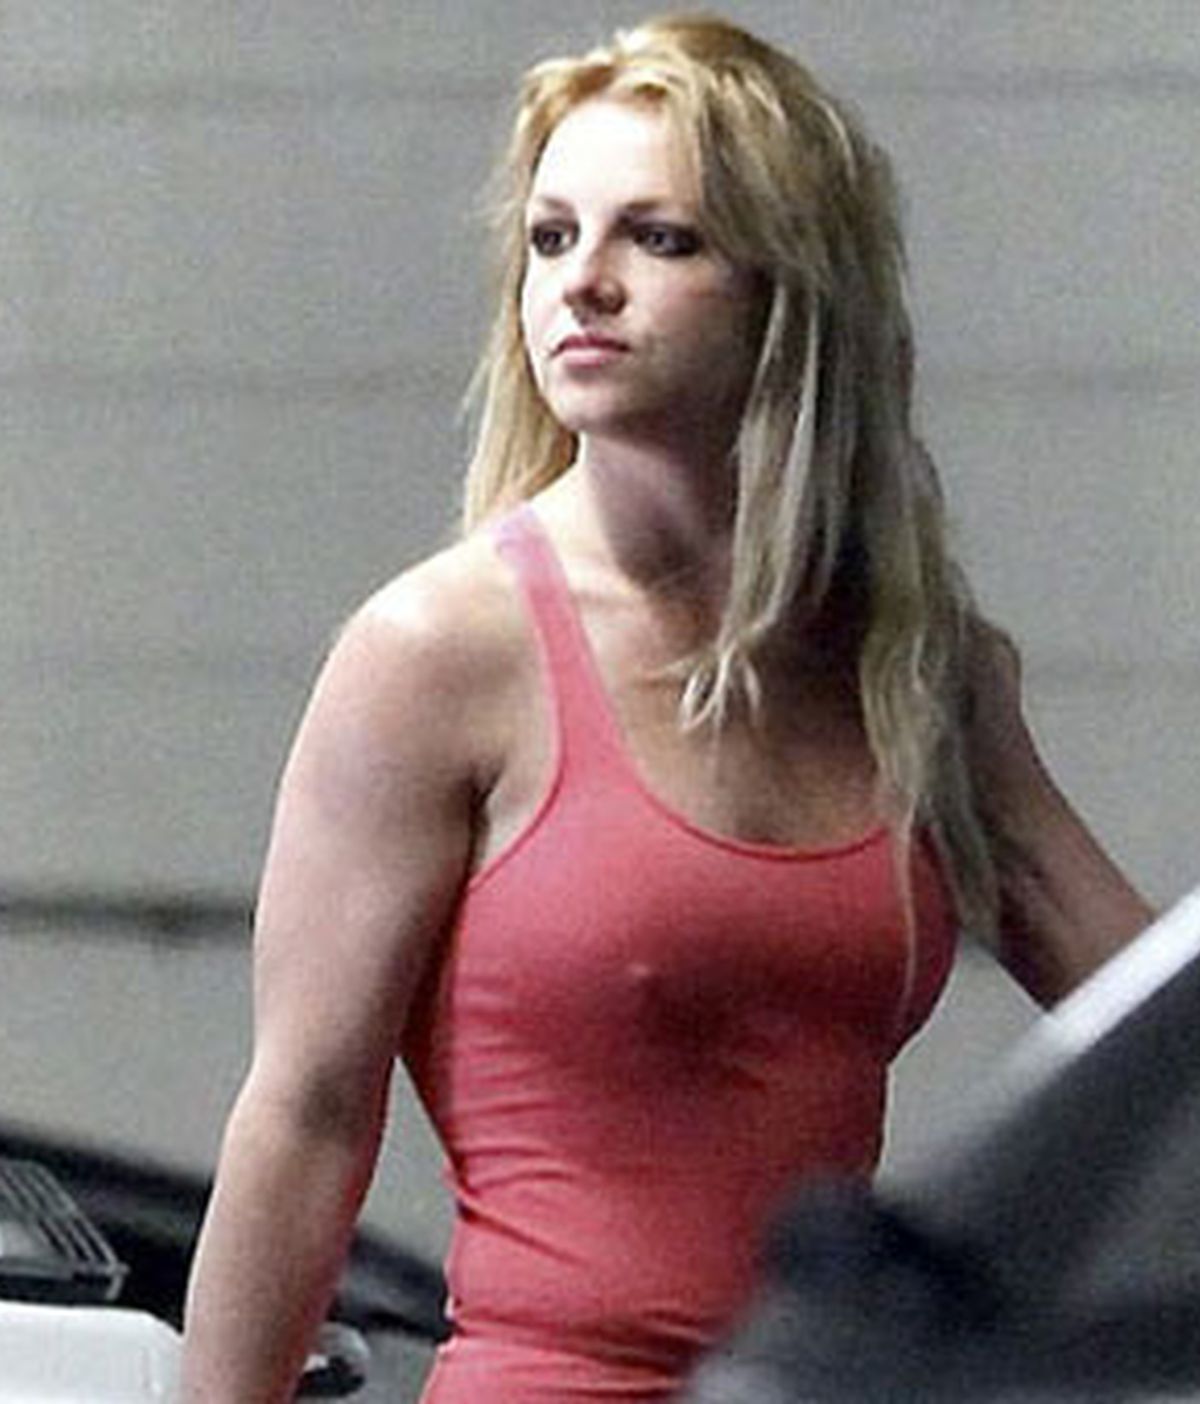 El padre de la cantante Britney Spears está preocupado por la imagen de su hija y le ha prohibido salir de casa sin sujetador para evitar que le hagan fotos comprometedoras. Foto: Archivo